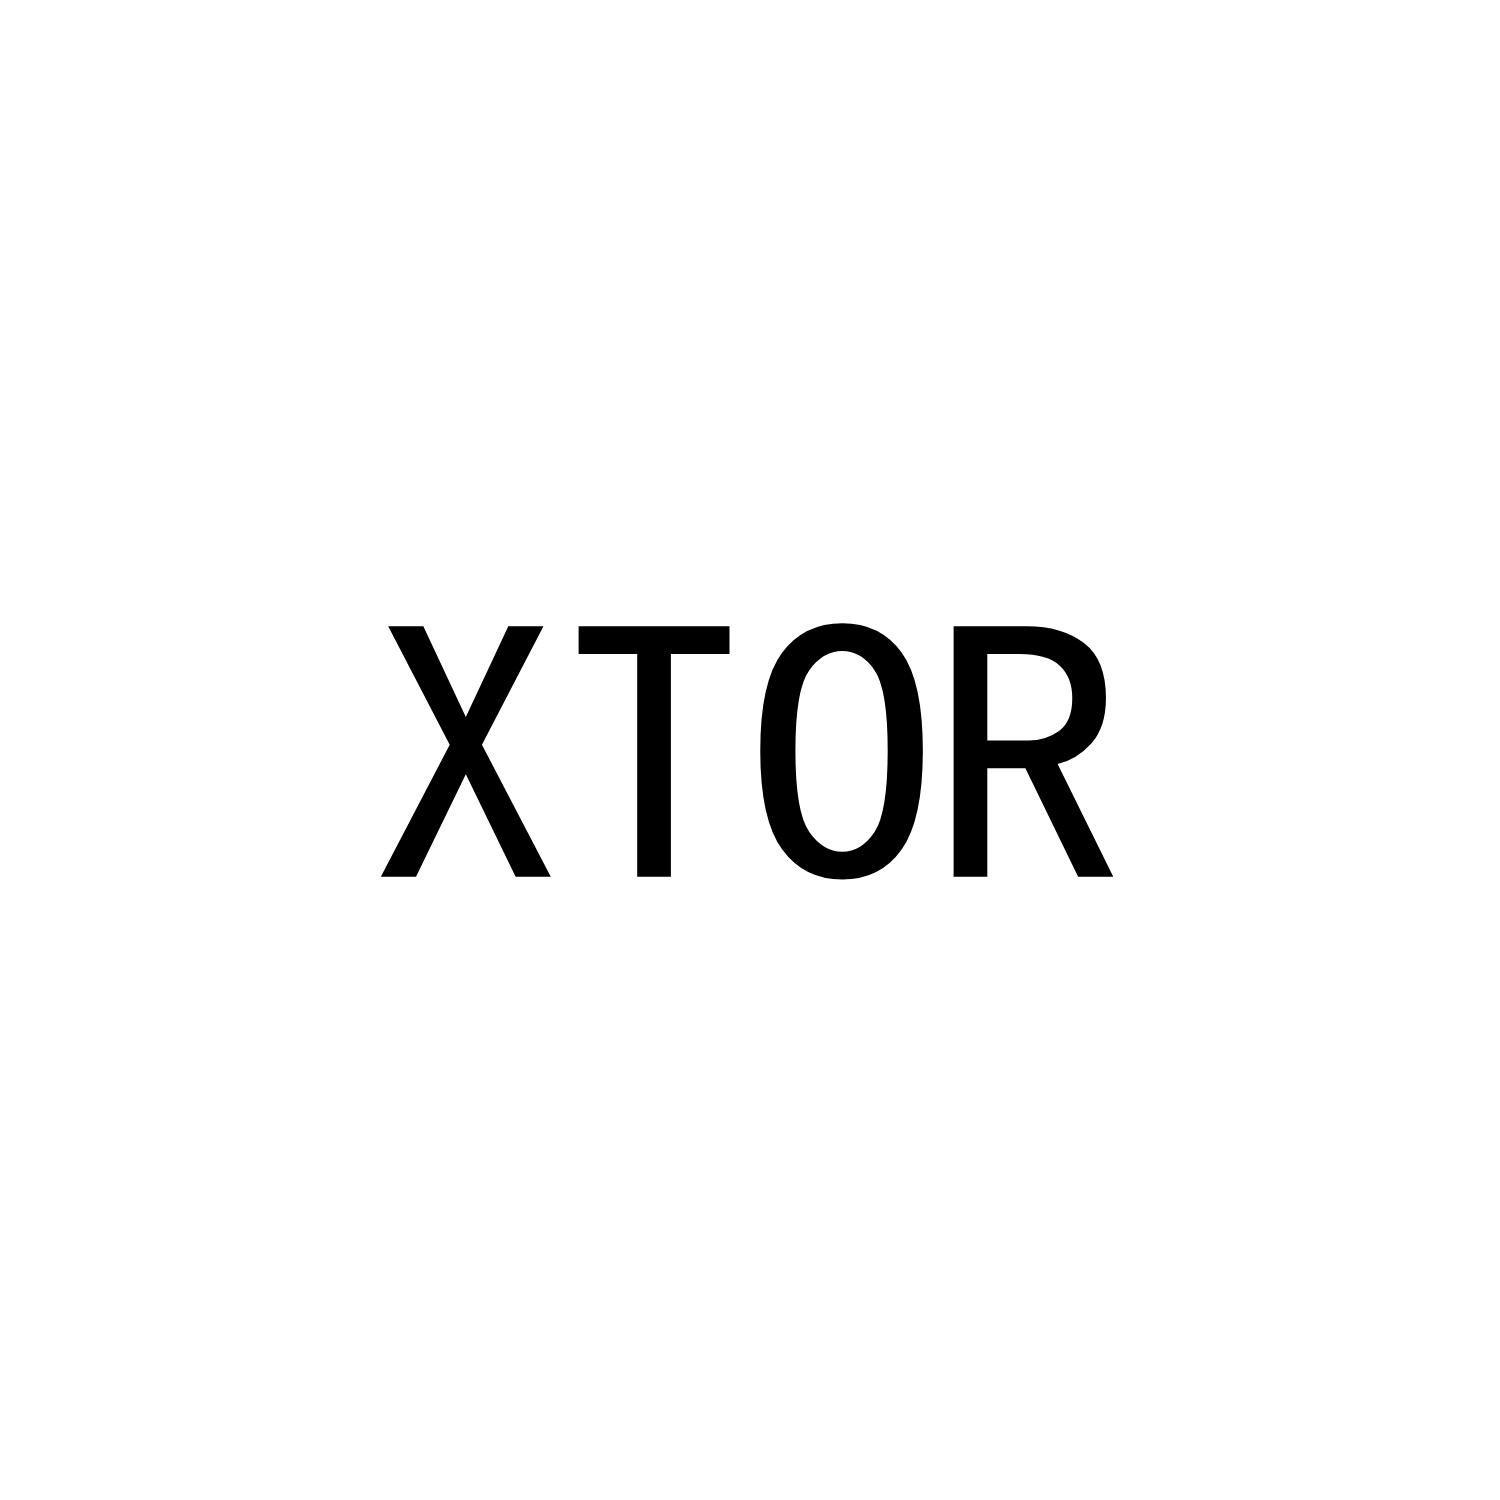 XTOR